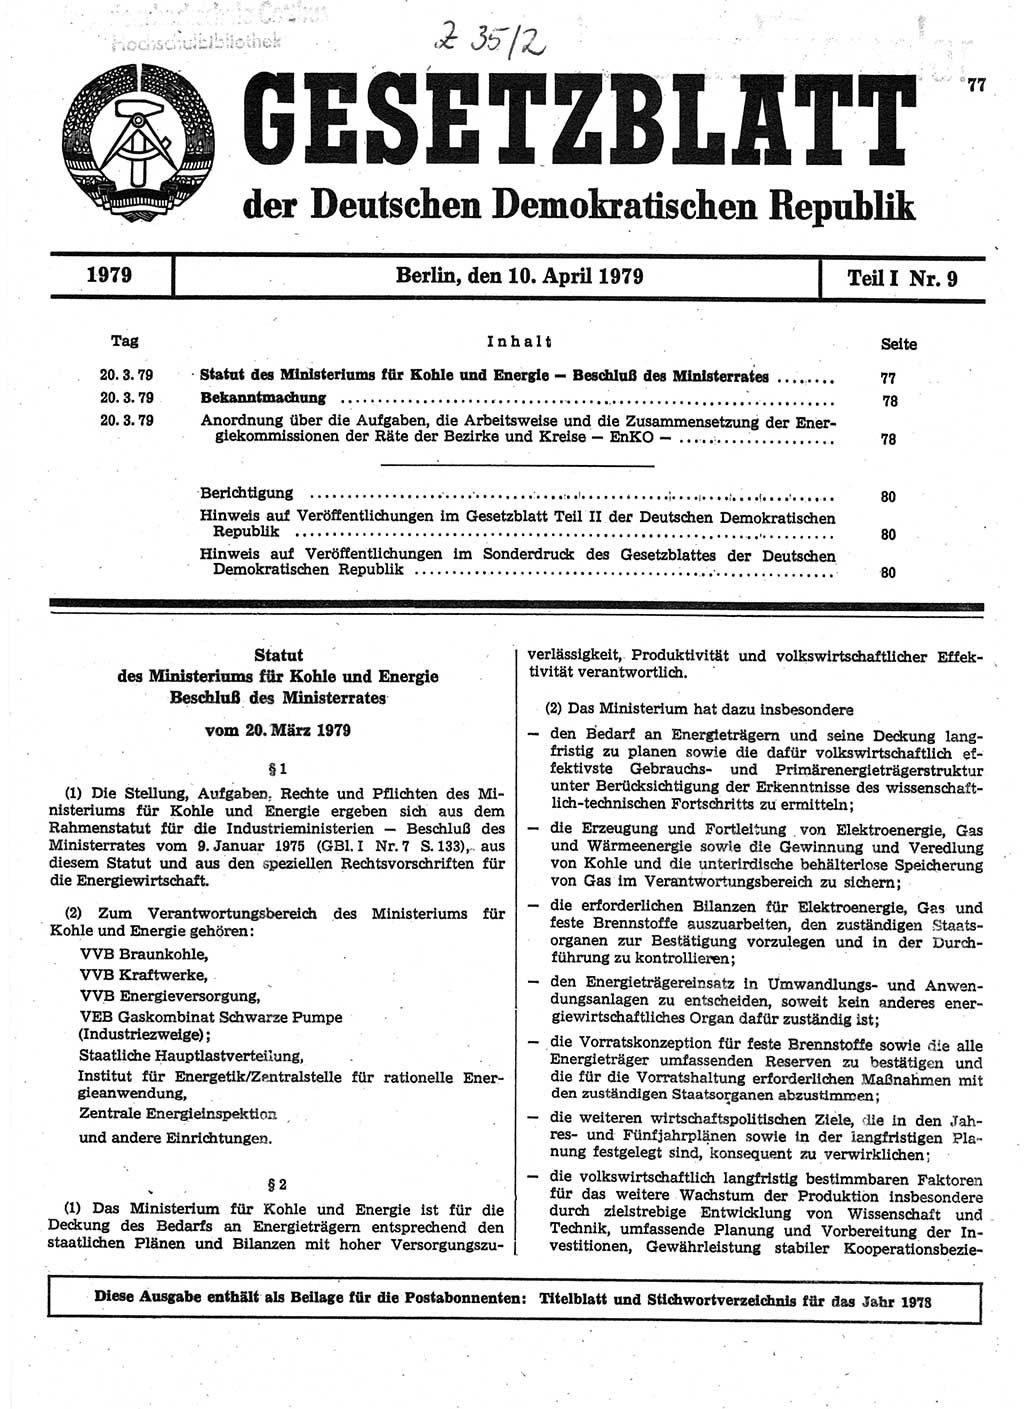 Gesetzblatt (GBl.) der Deutschen Demokratischen Republik (DDR) Teil Ⅰ 1979, Seite 77 (GBl. DDR Ⅰ 1979, S. 77)